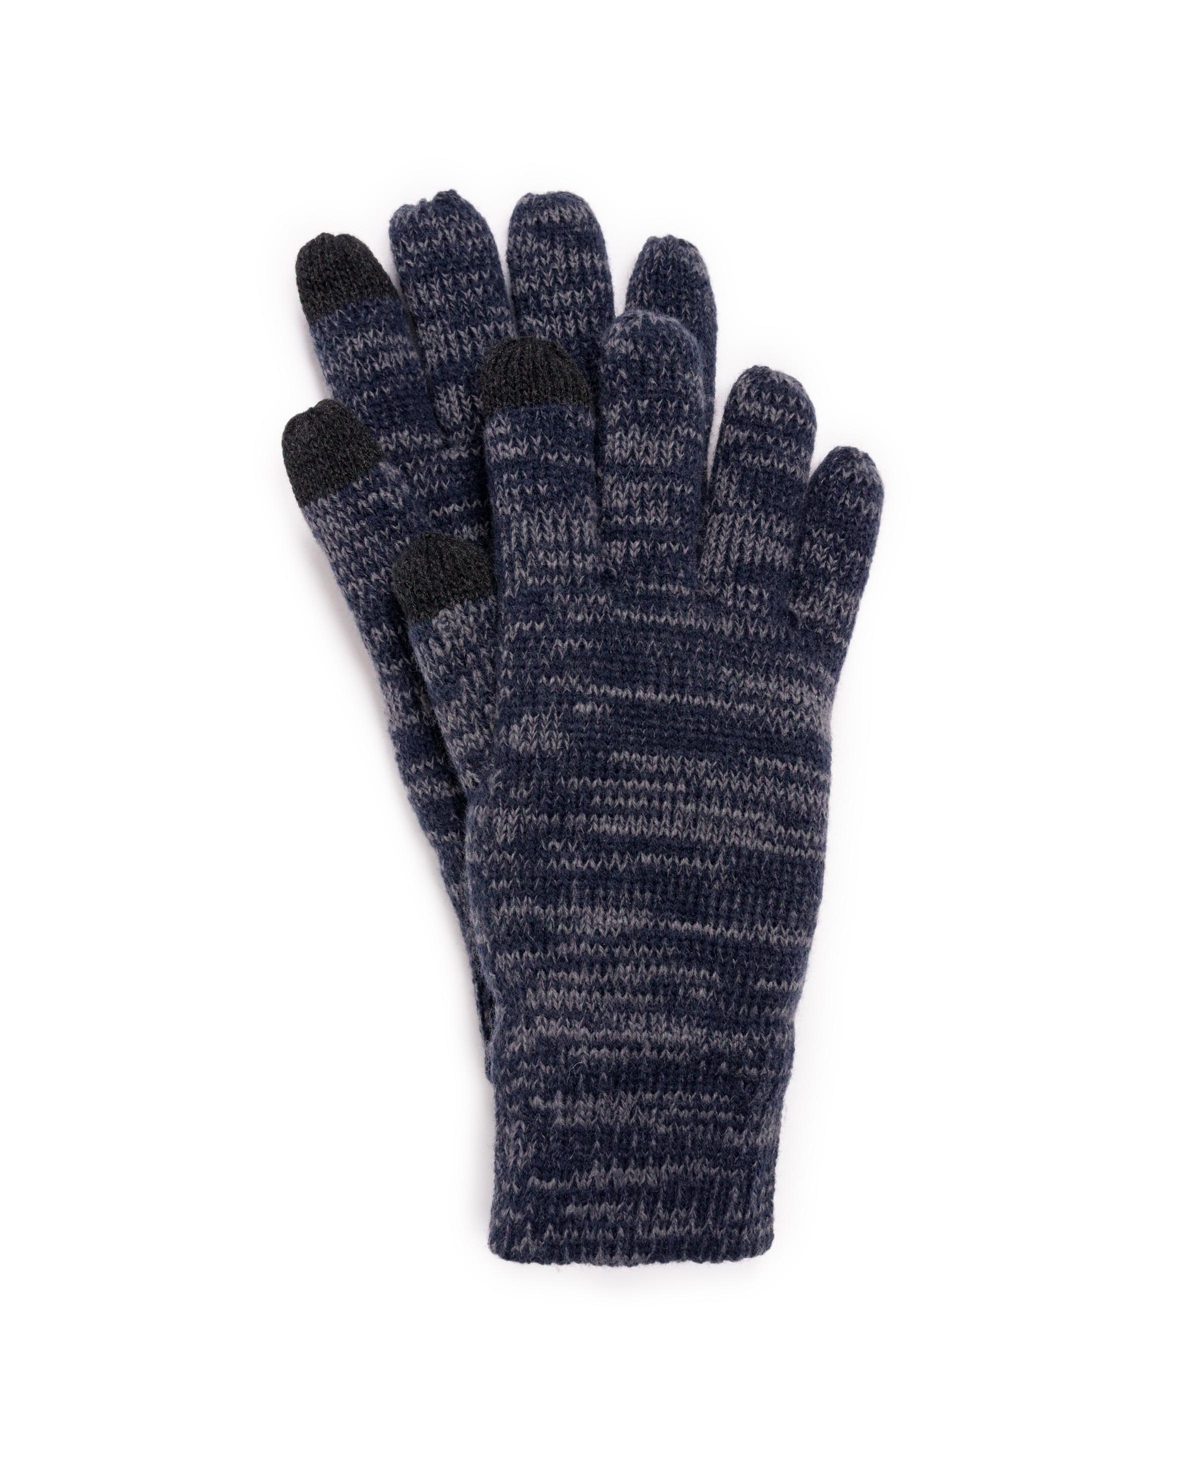 Men's Heat Retainer Gloves, Navy/Blue, One Size - Navy/blue